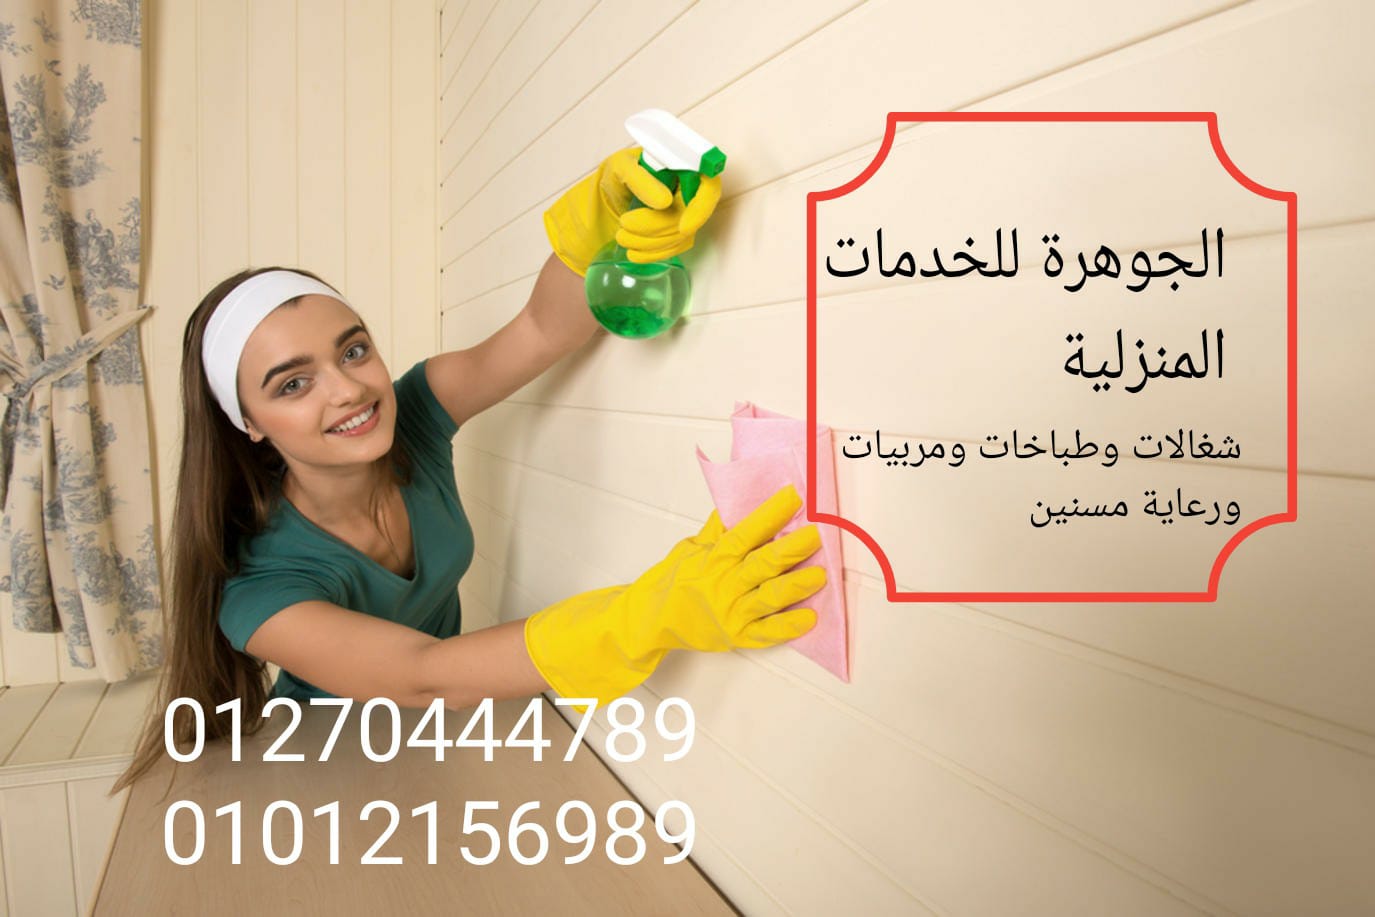 شركة الجوهرة للخدمات المنزلية نوفر جميع انواع العمالة المنزلية للاسر والعائلات